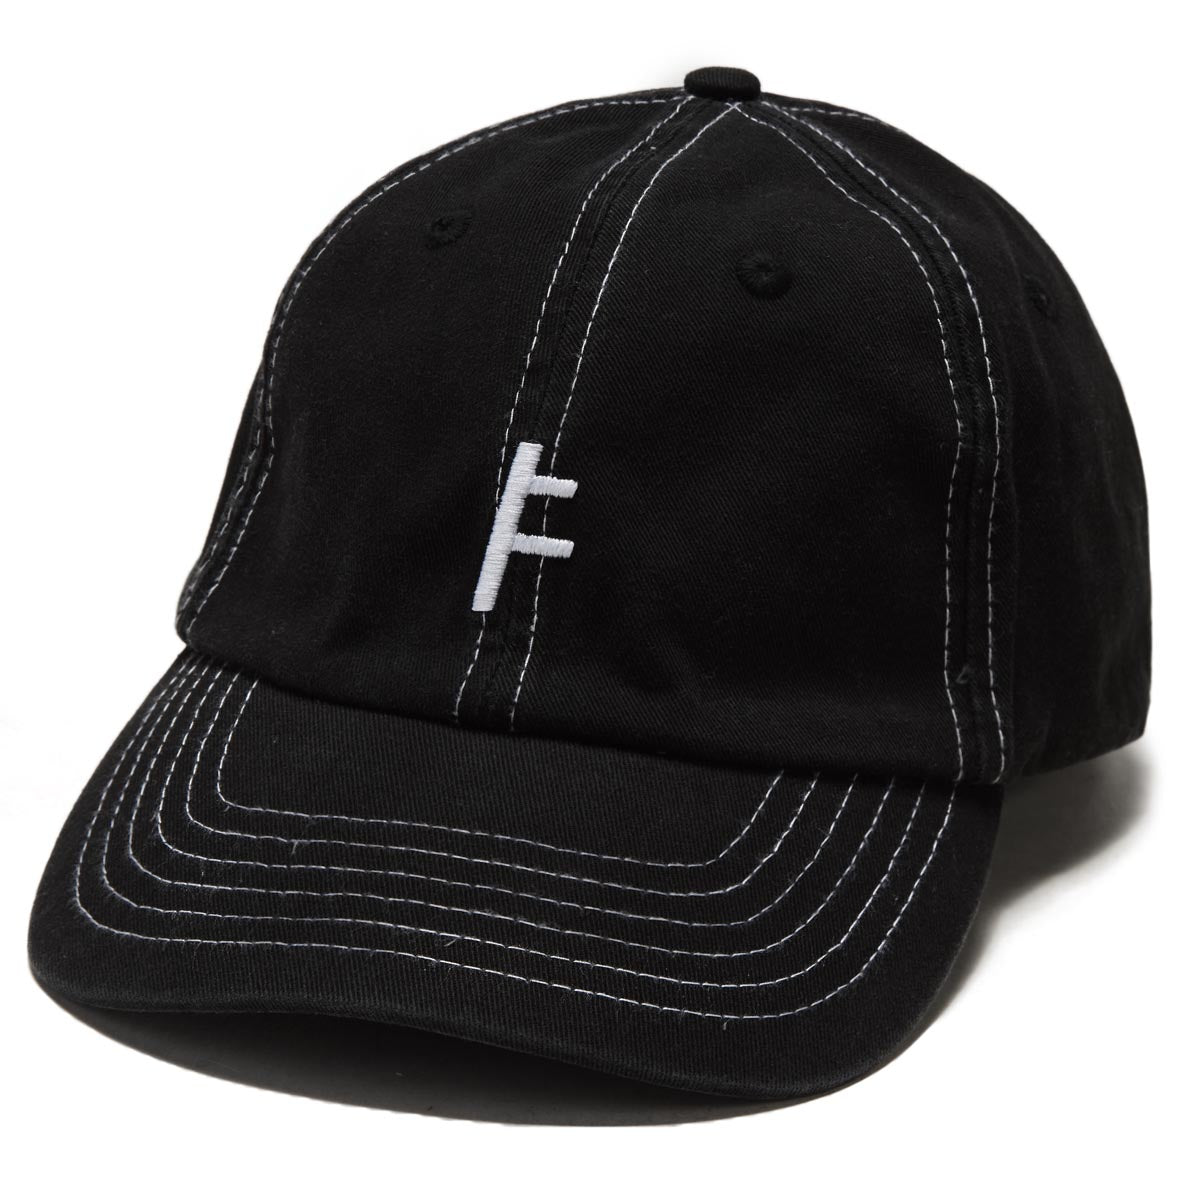 Former Franchise Slant Hat - Black image 1